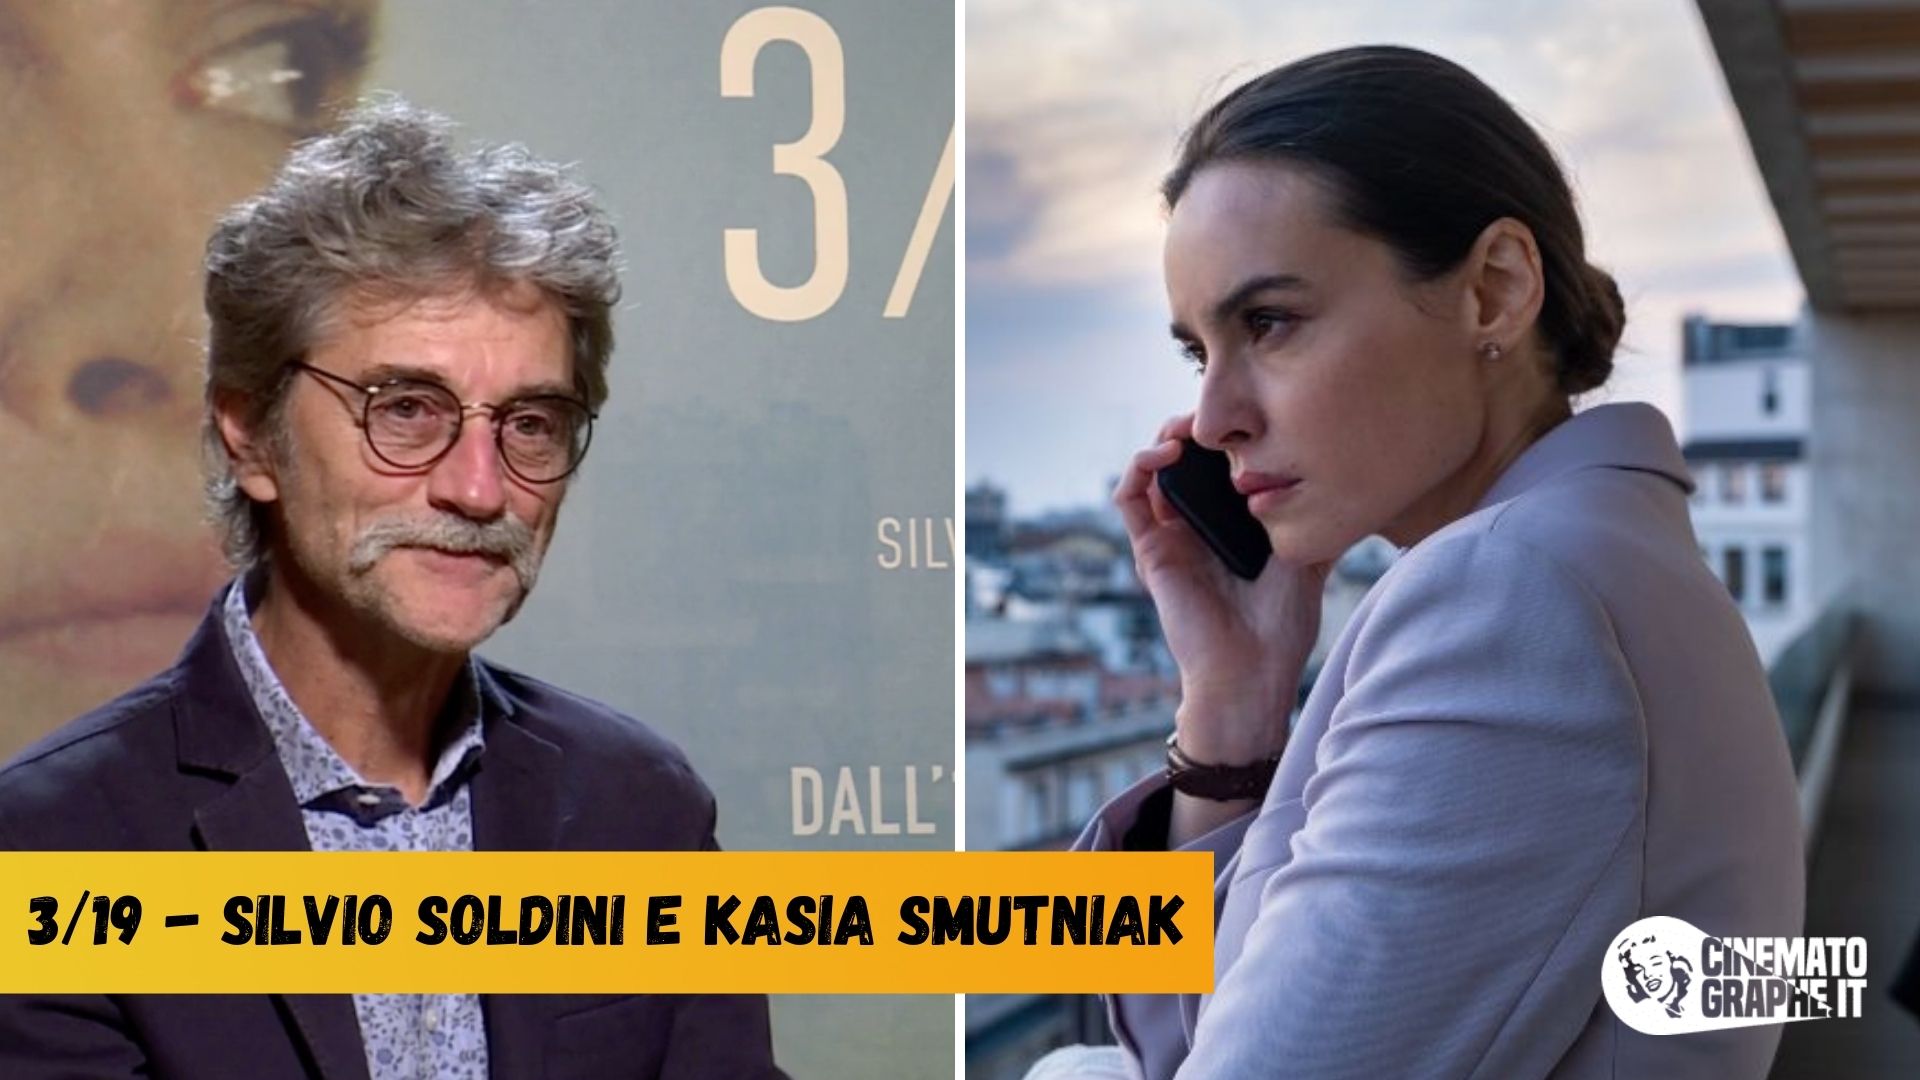 Kasia Smutniak e Silvio Soldini su 3/19: ecco perché amo i personaggi femminili [VIDEO]